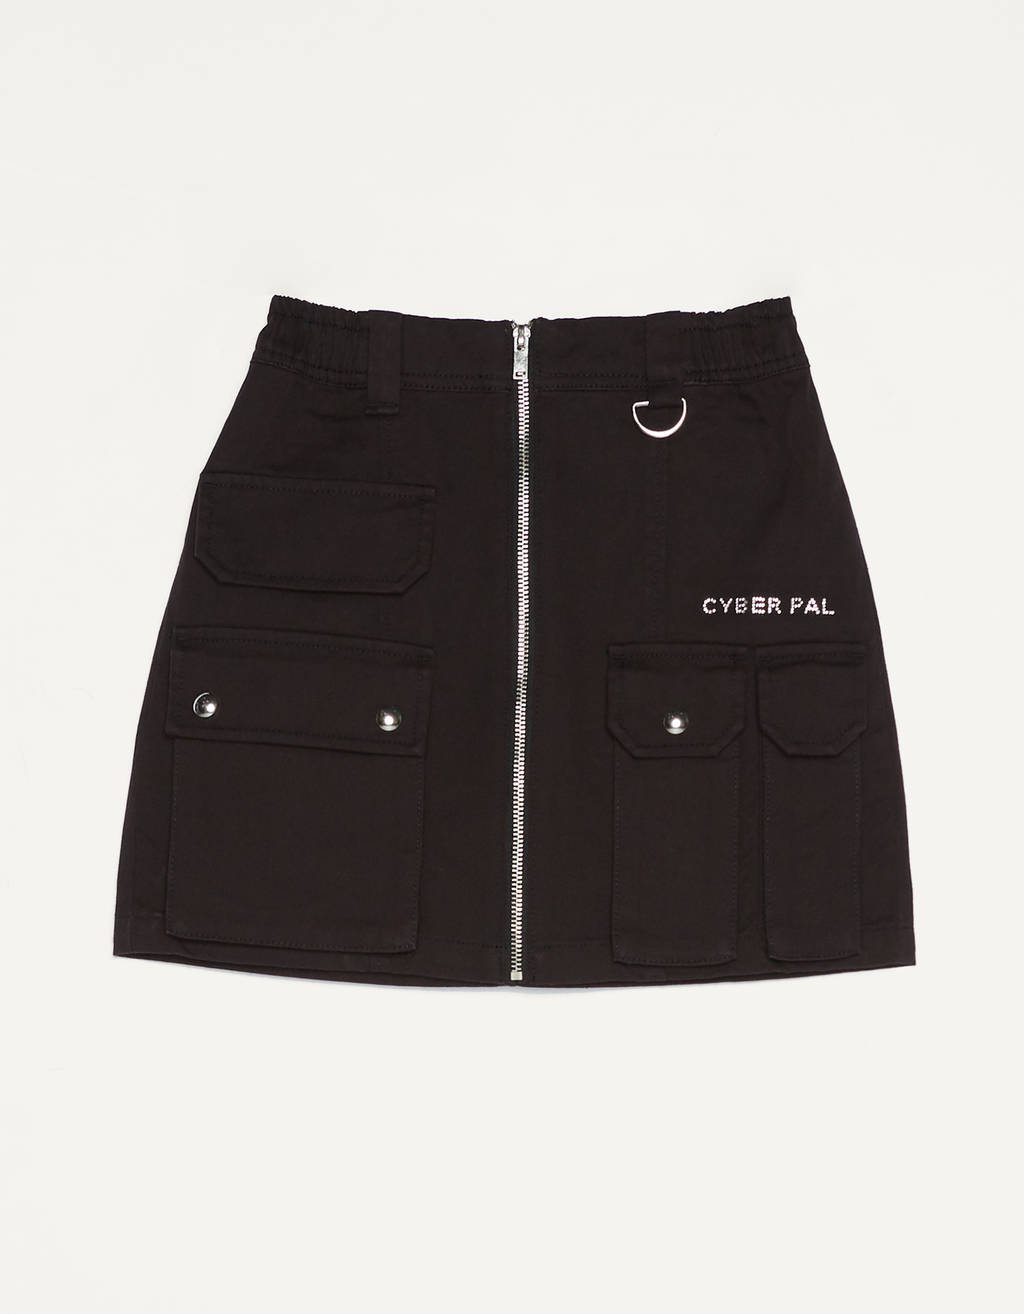 bershka Short cargo skirt with zipper detail - Skirts - Bershka United ...